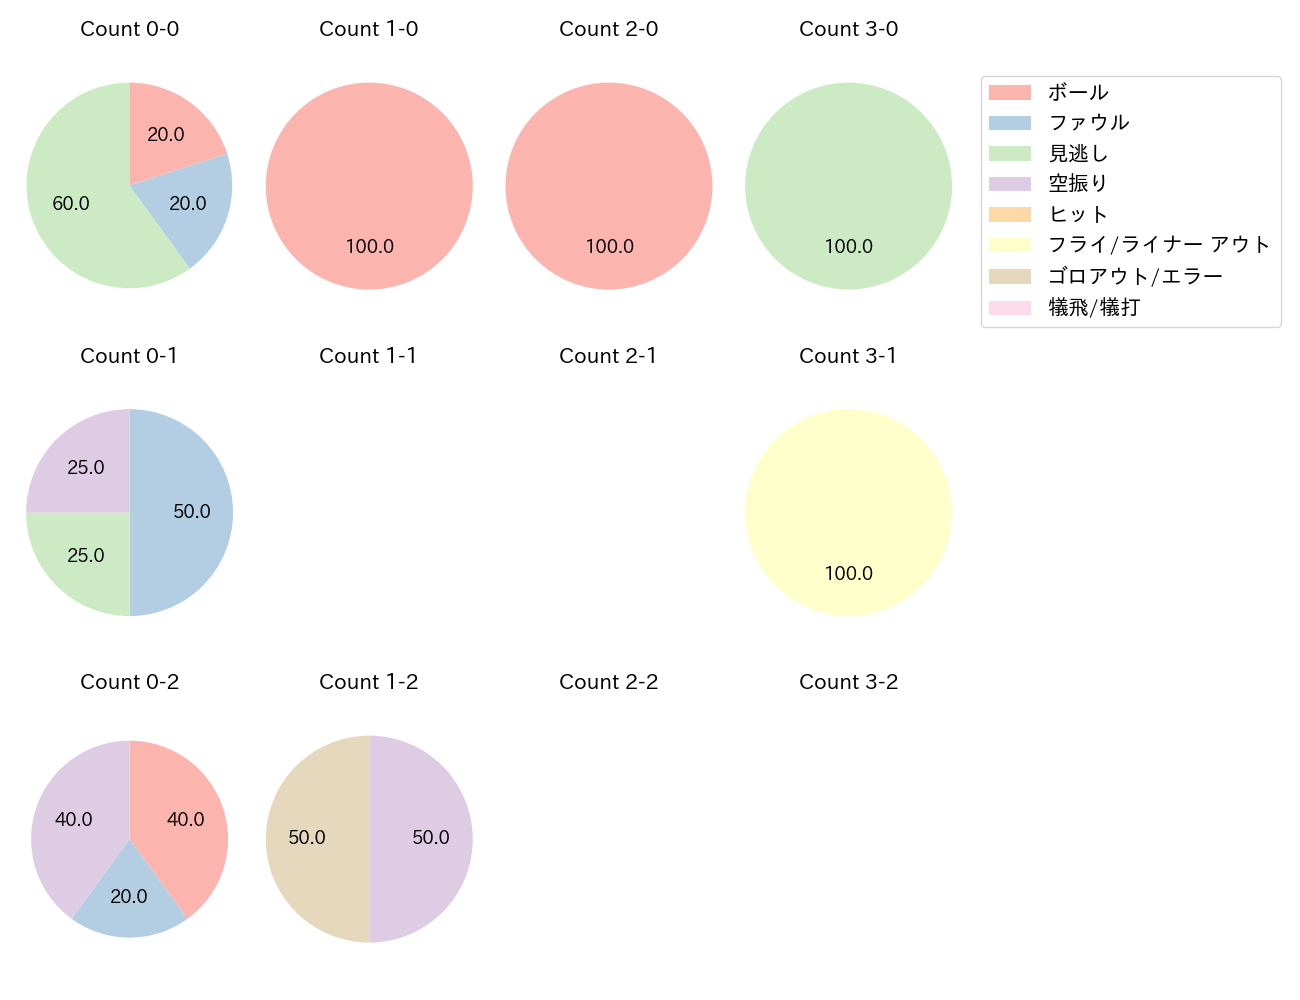 伊藤 裕季也の球数分布(2023年10月)